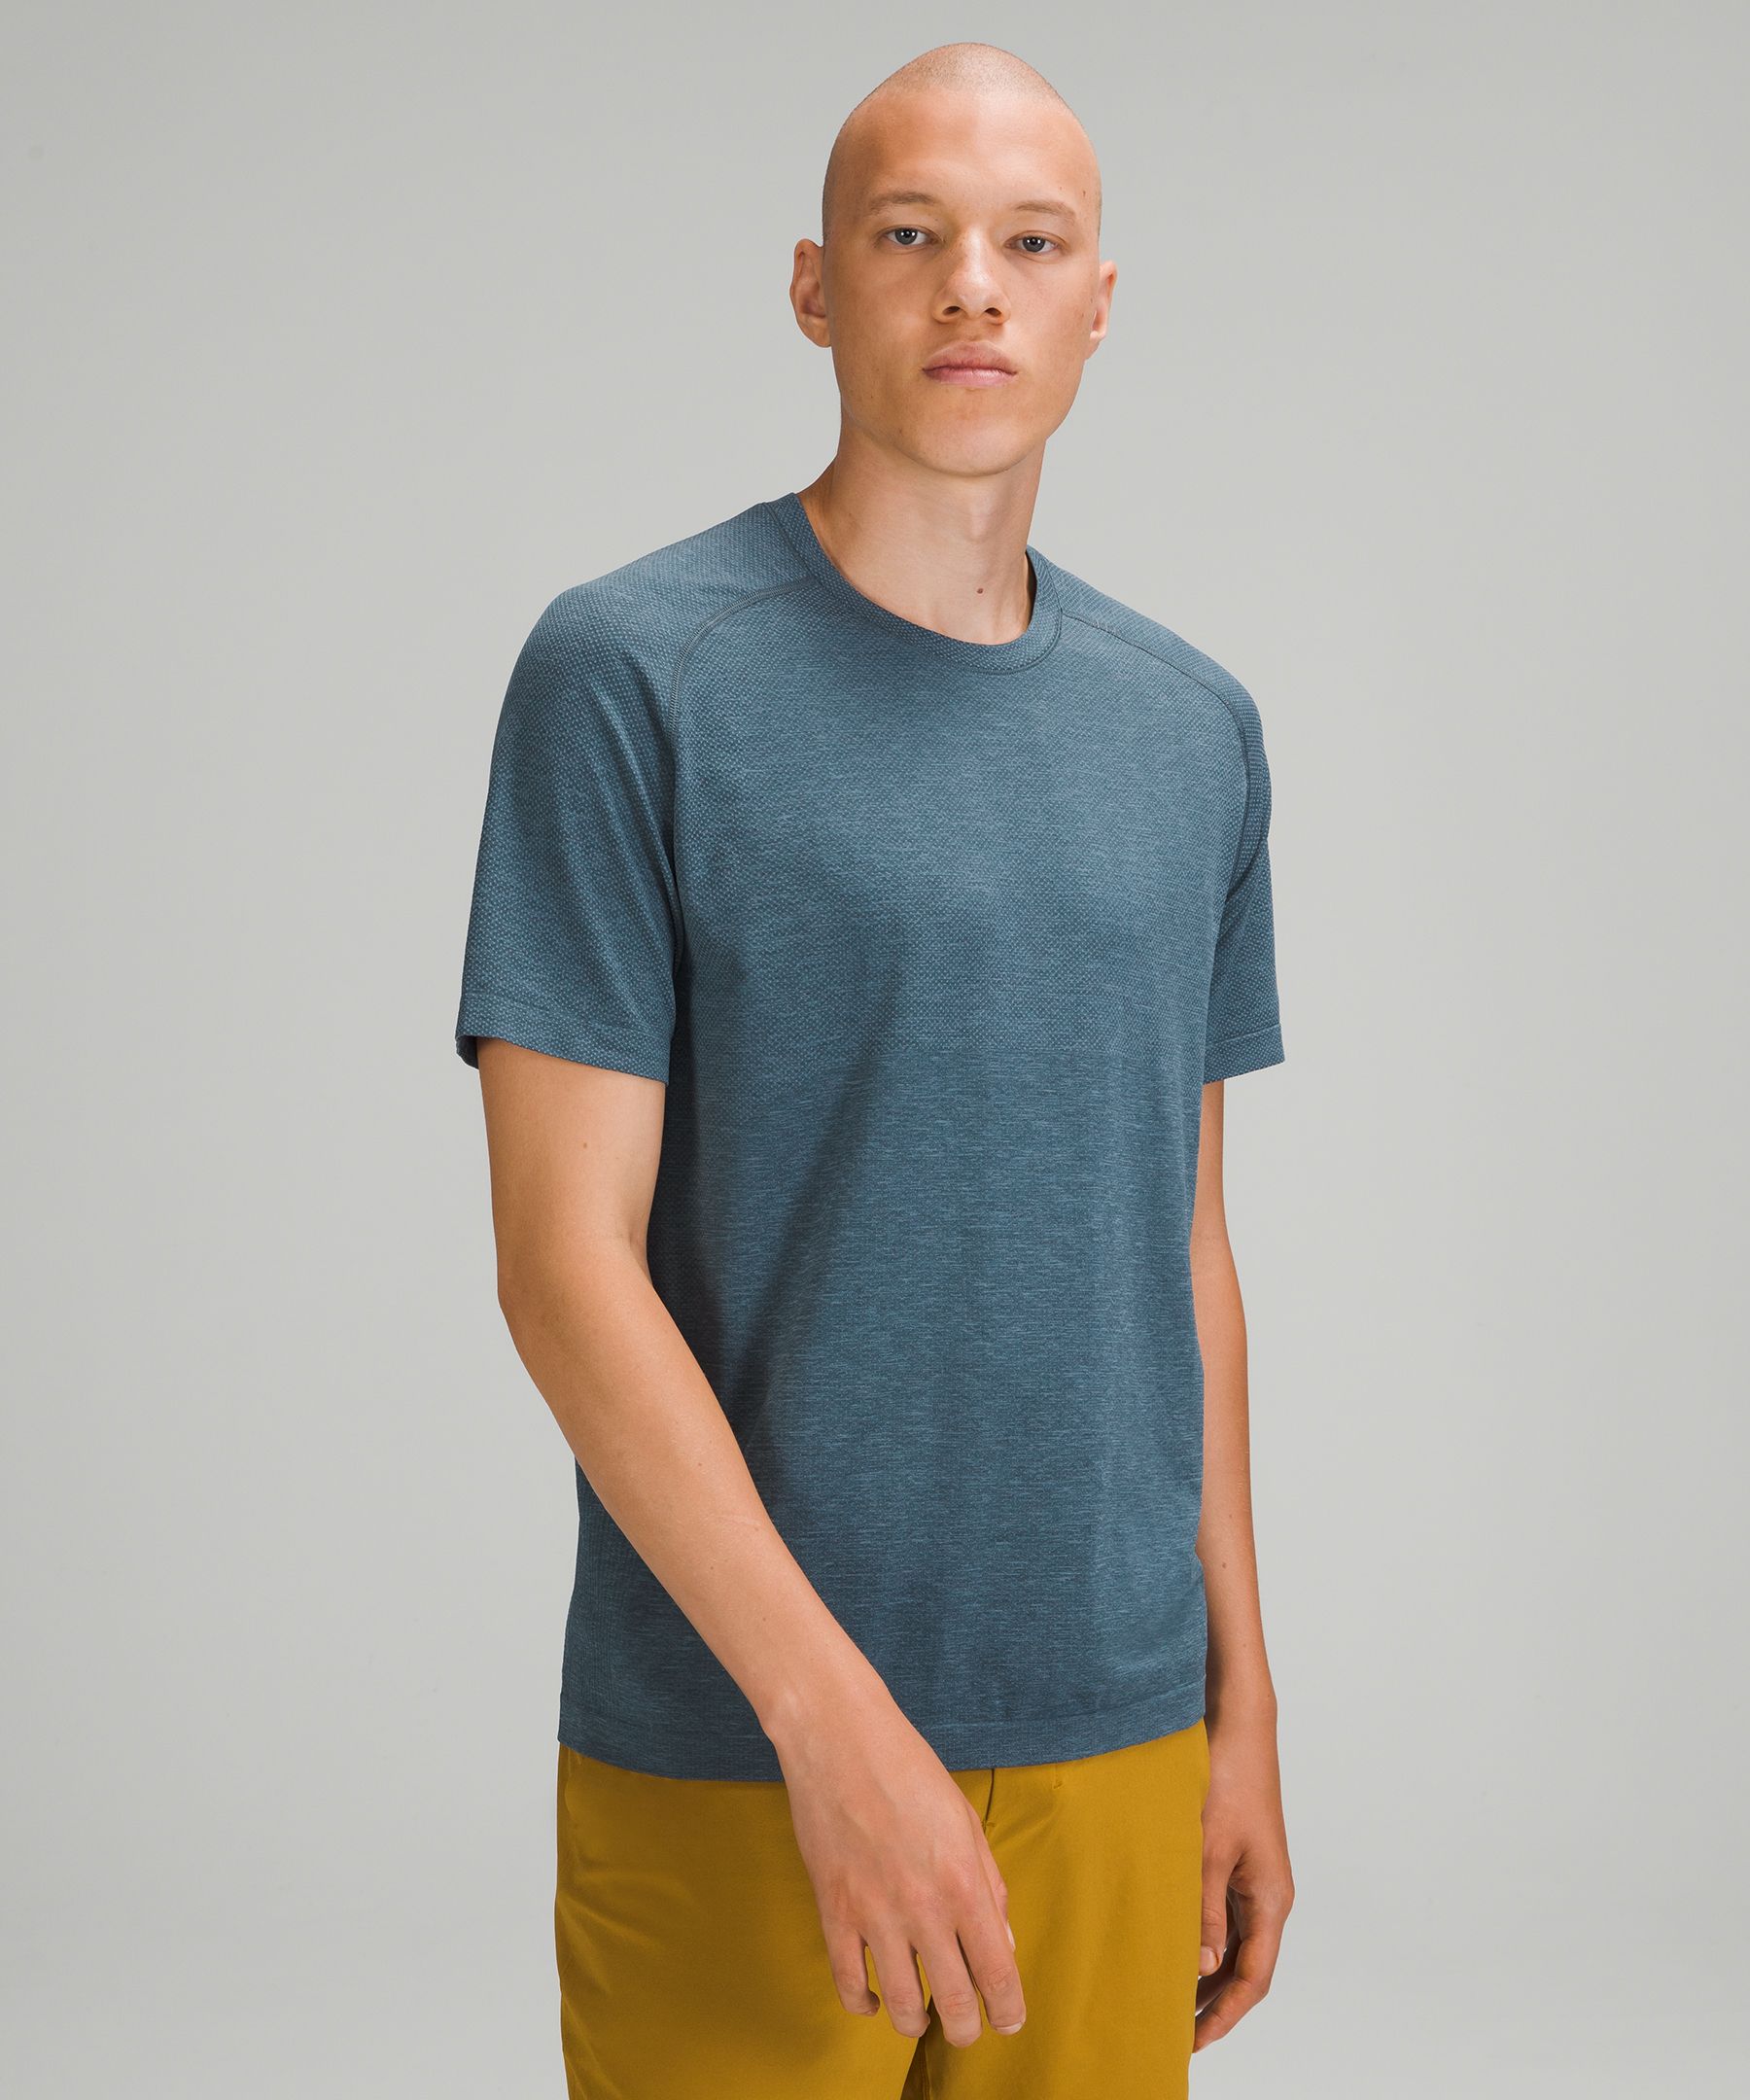 Lululemon Metal Vent Tech Short Sleeve Shirt 2.0 In River Blue/iron Blue